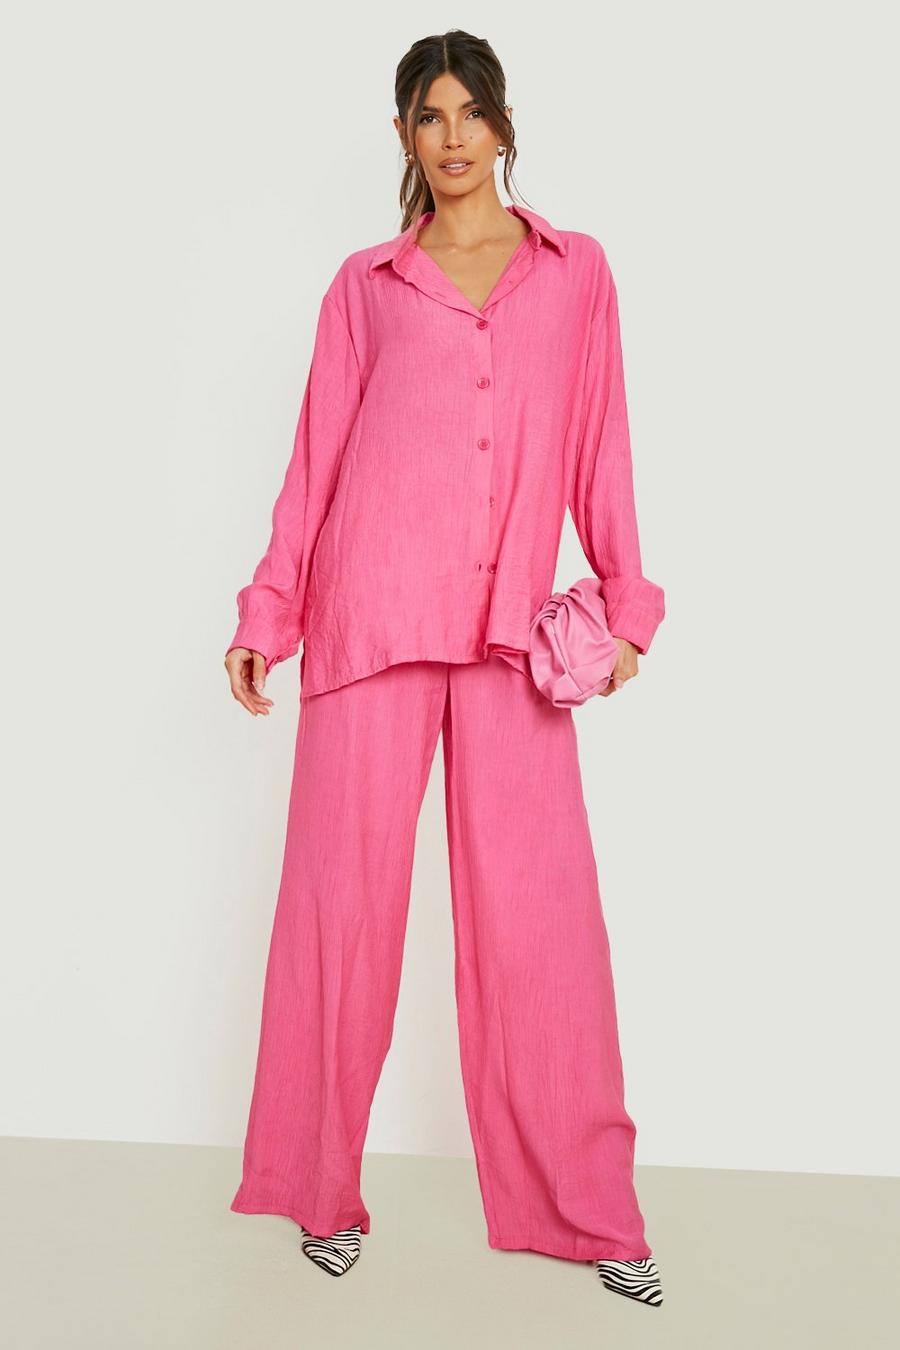 Pantalon texturé large, Hot pink